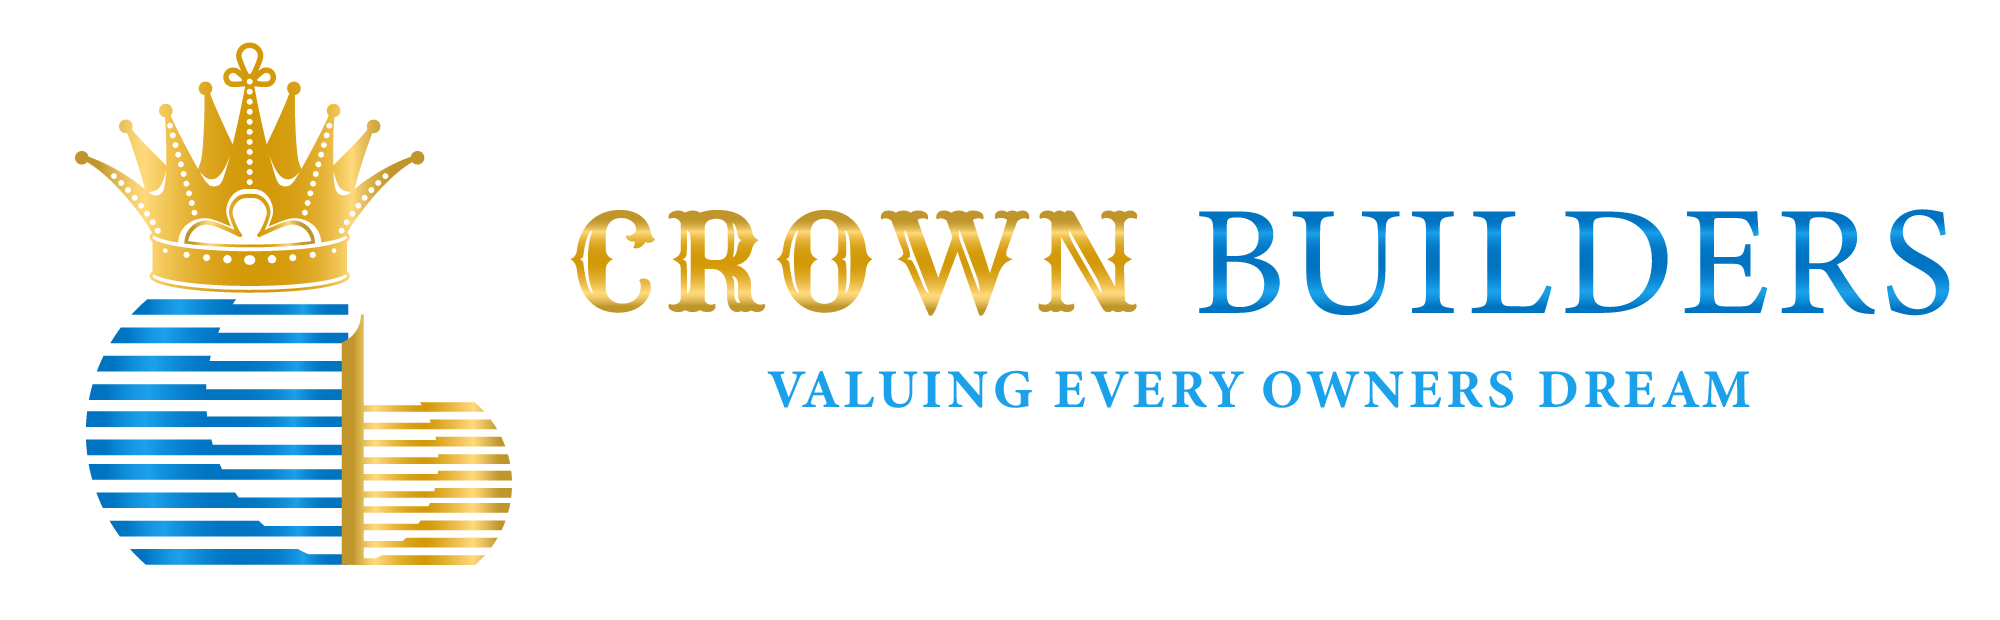 Crown Builders Logo